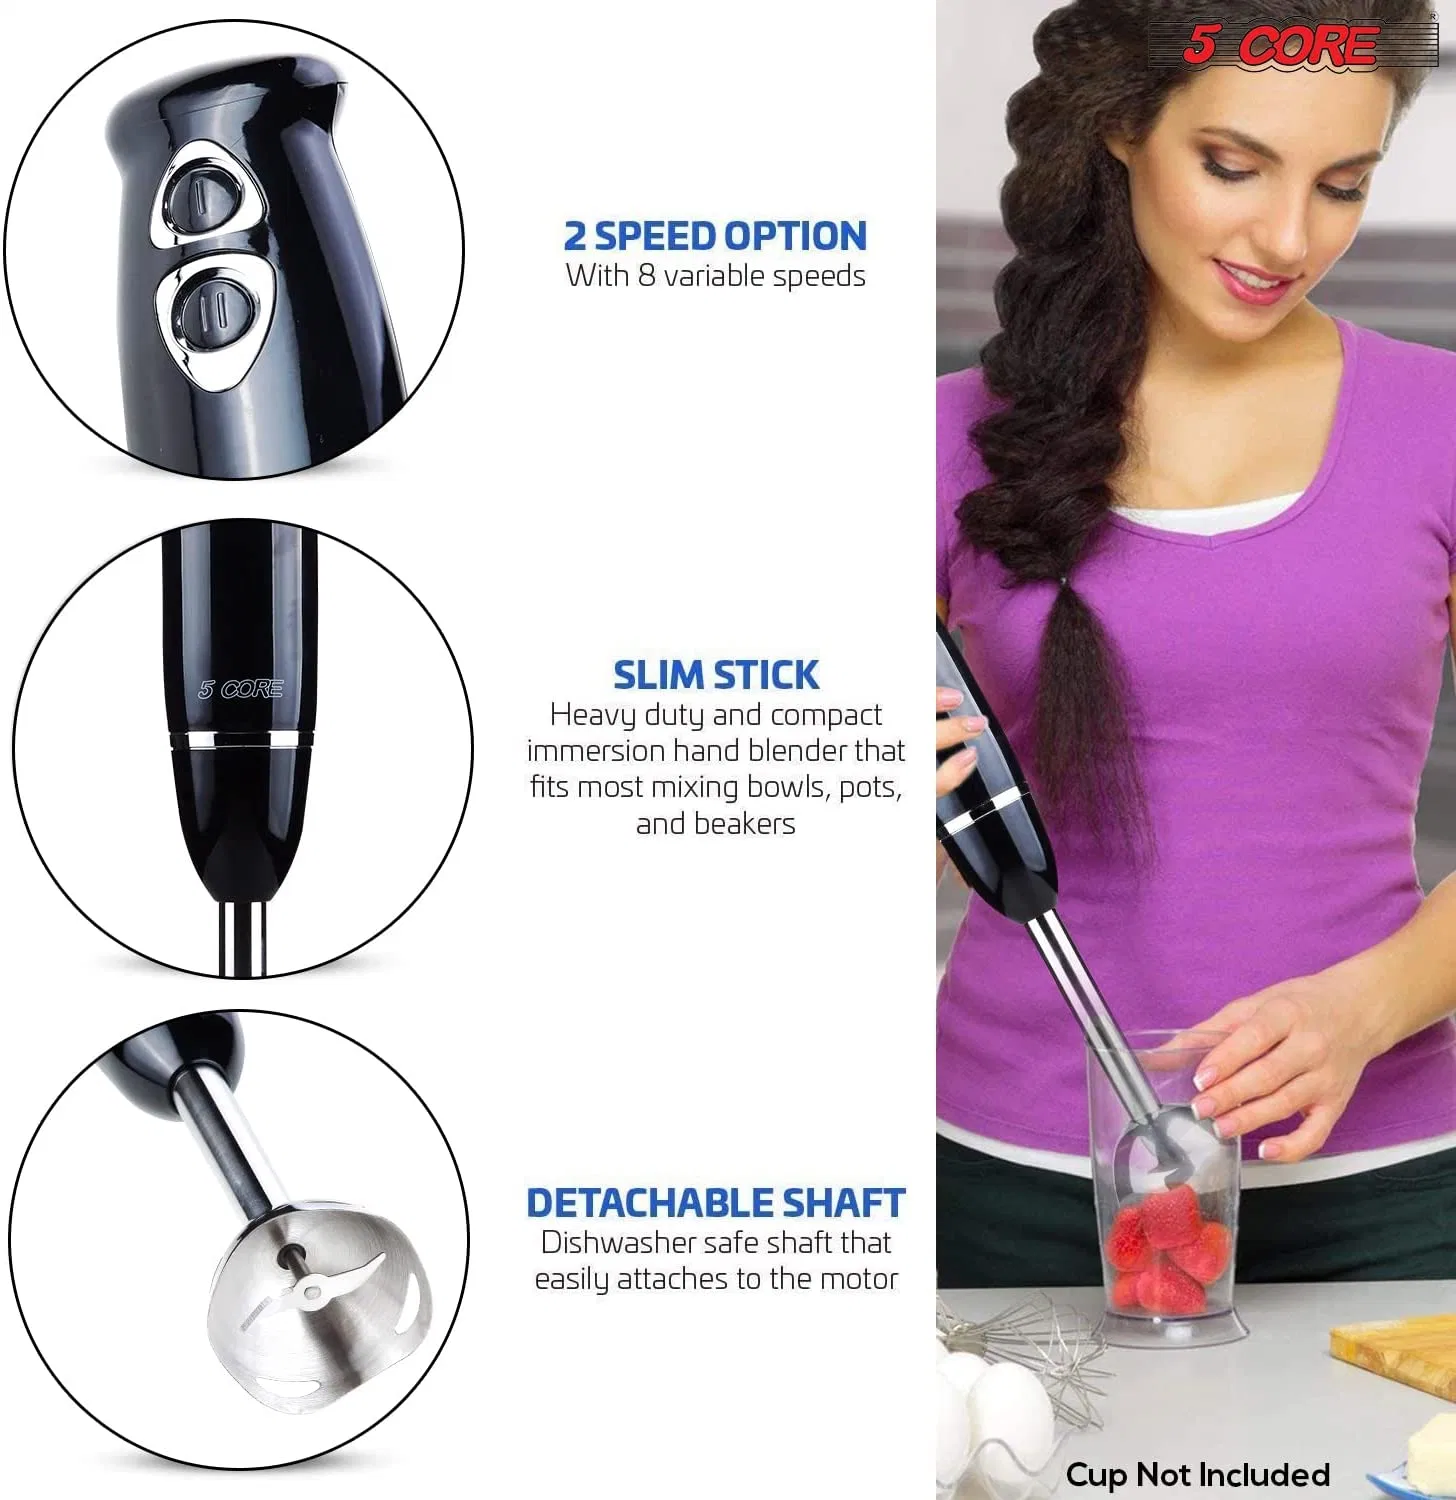 https://c.shld.net/rpx/i/s/pi/mp/10517840/prod_27569035003?src=https%3A%2F%2Fimage.doba.com%2Fdg9-kYqjOIJvaCbr%2Fhand-blender-immersion-blender-handheld-stick-batidora-electric-blenders-emersion-hand-mixer-for-kitchen-5-core-hb-1510-blk.webp&d=aa7d5f5b3f7057c4dc54b8ef5c02734cb6c7ec00